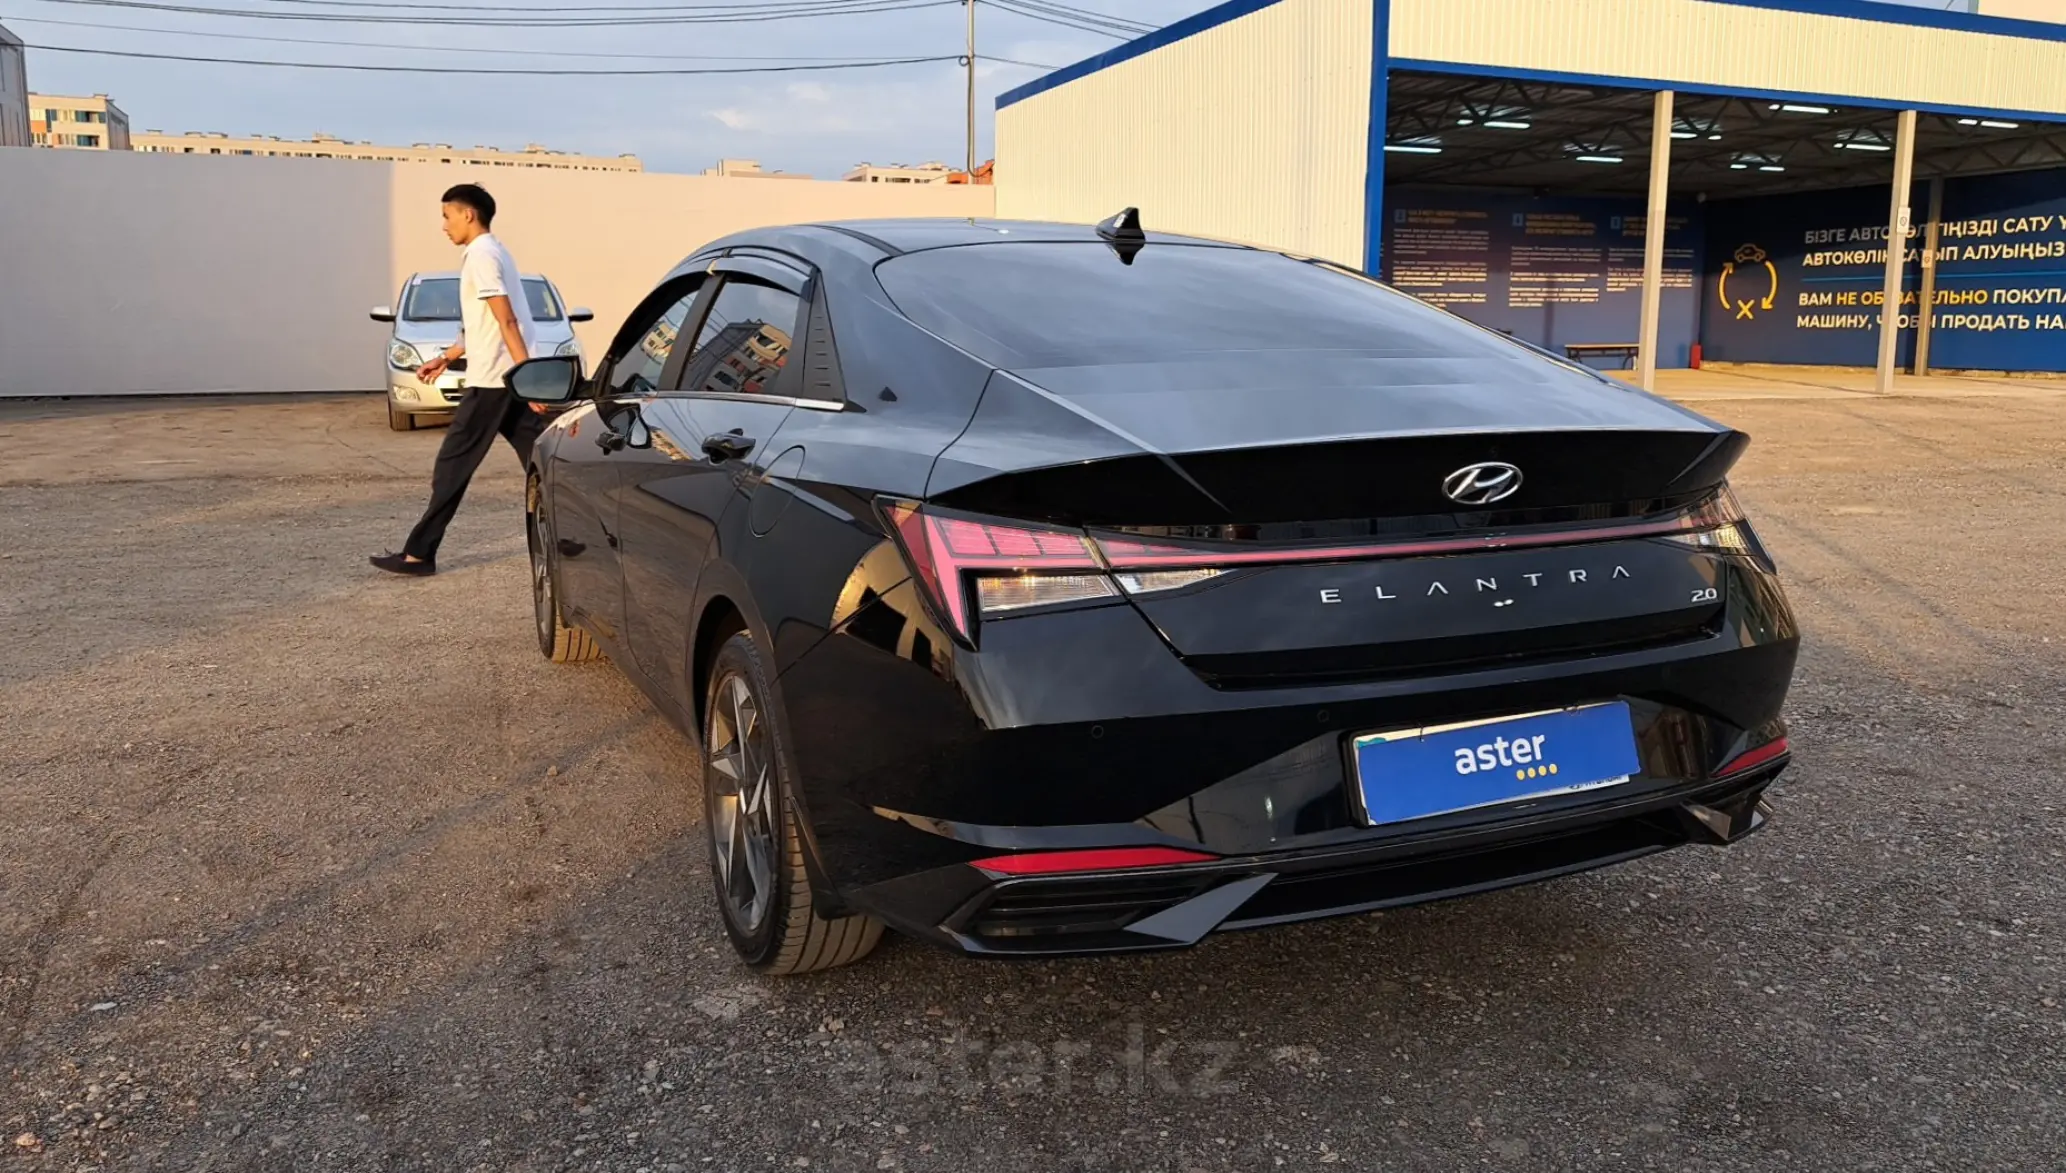 Купить Hyundai Elantra 2023 года в Алматы, цена 13400000 тенге. Продажа Hyundai  Elantra в Алматы - Aster.kz. №c849447